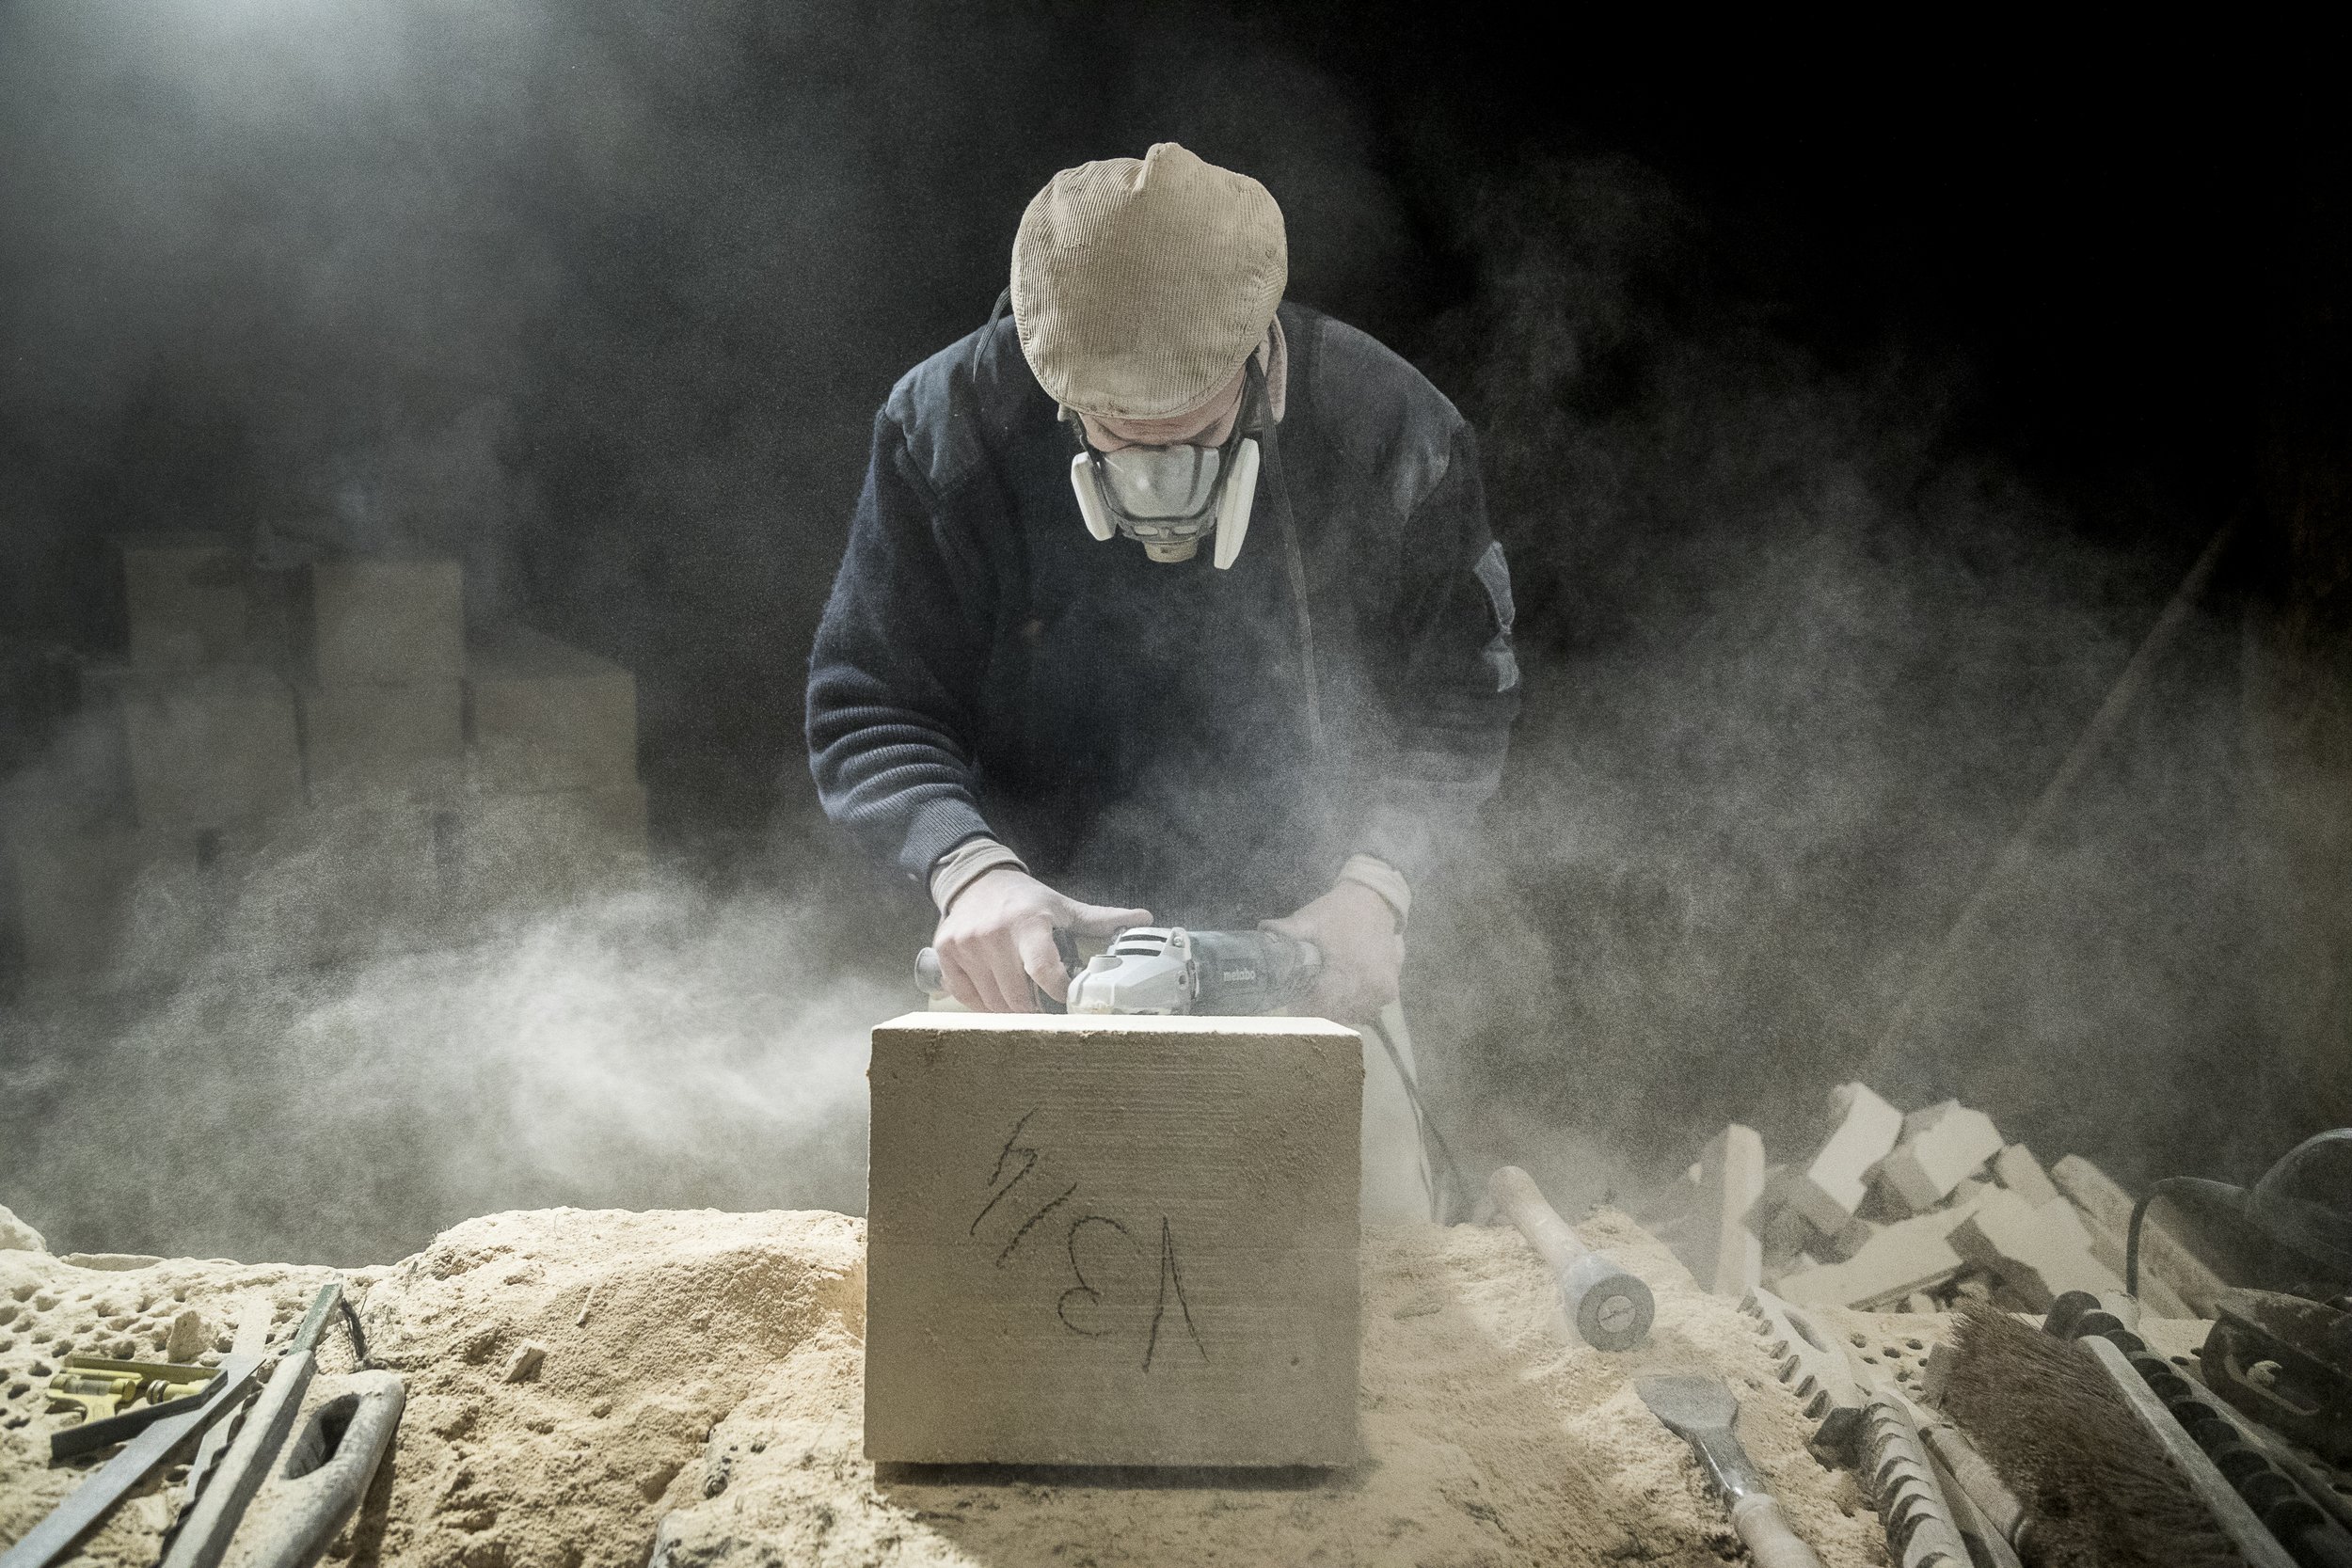  Senlis, 6 février 2017. Steve Paton , tailleur sur pierre. Son atelier de taille se trouve dans une ancienne champignonnière, près de Chantilly. 